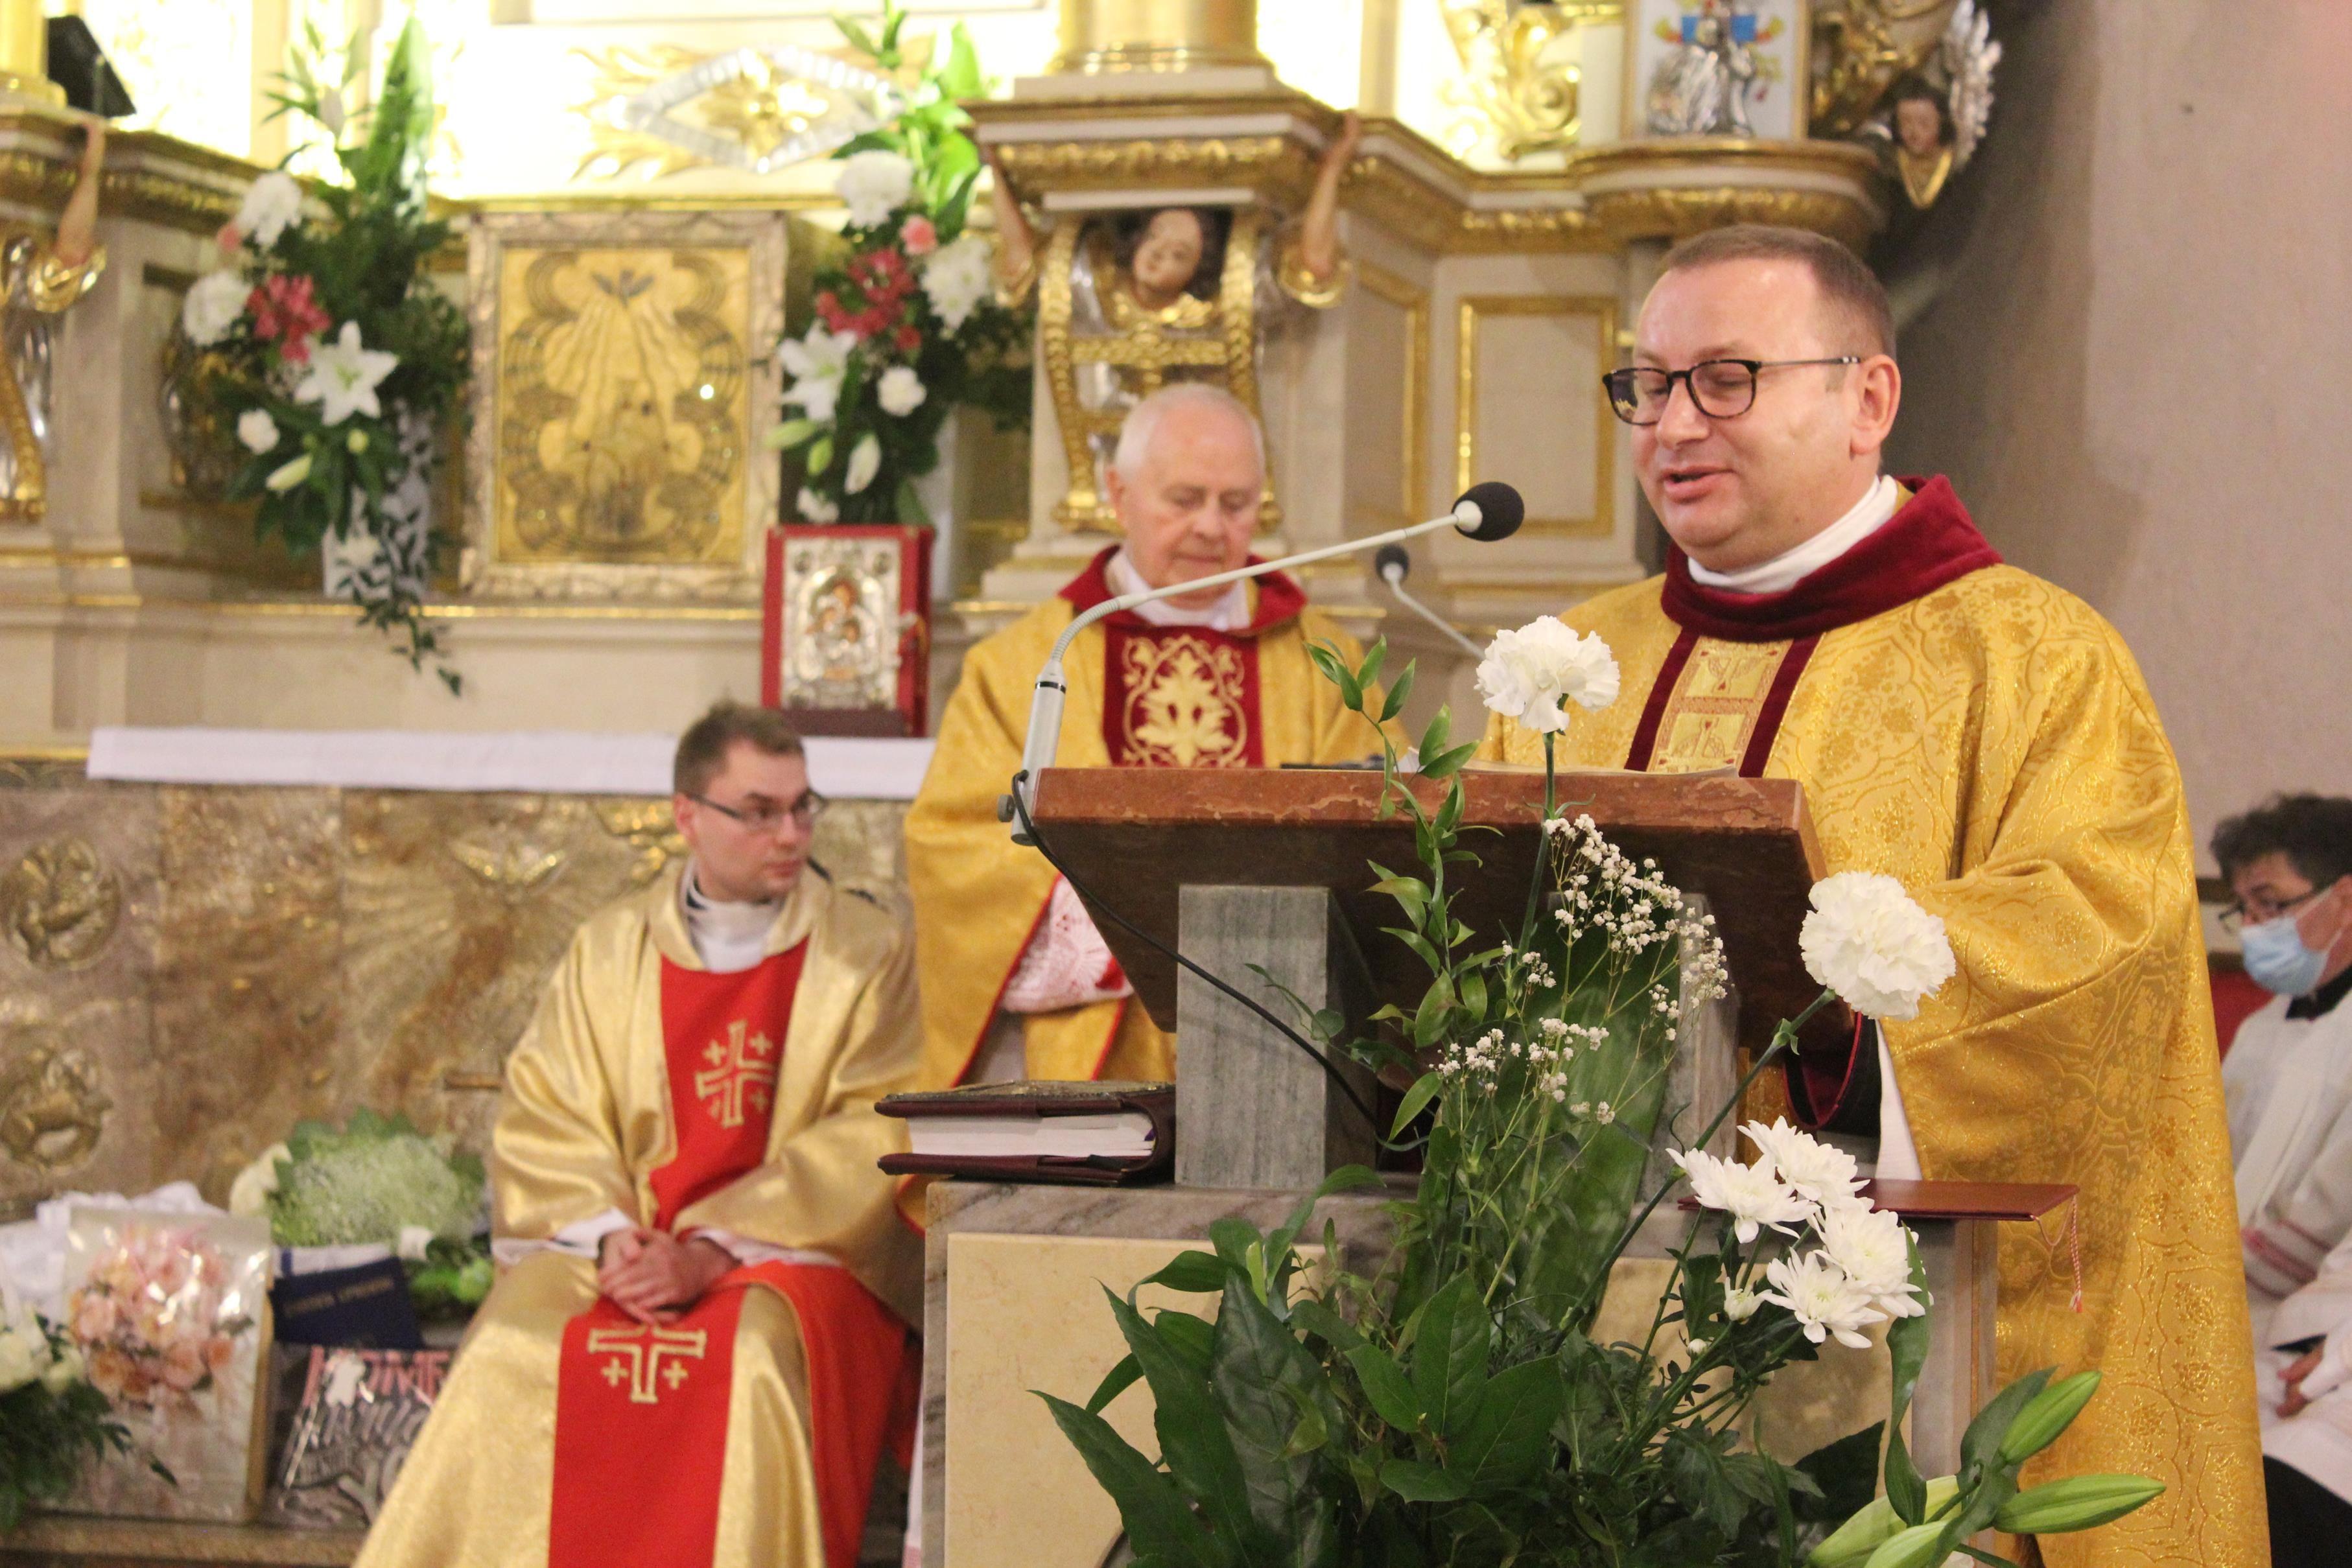 Jubileusz 60-lecia święceń kapłańskich księdza prałata Franciszka Cieślaka – kliknięcie spowoduje powiększenie obrazka